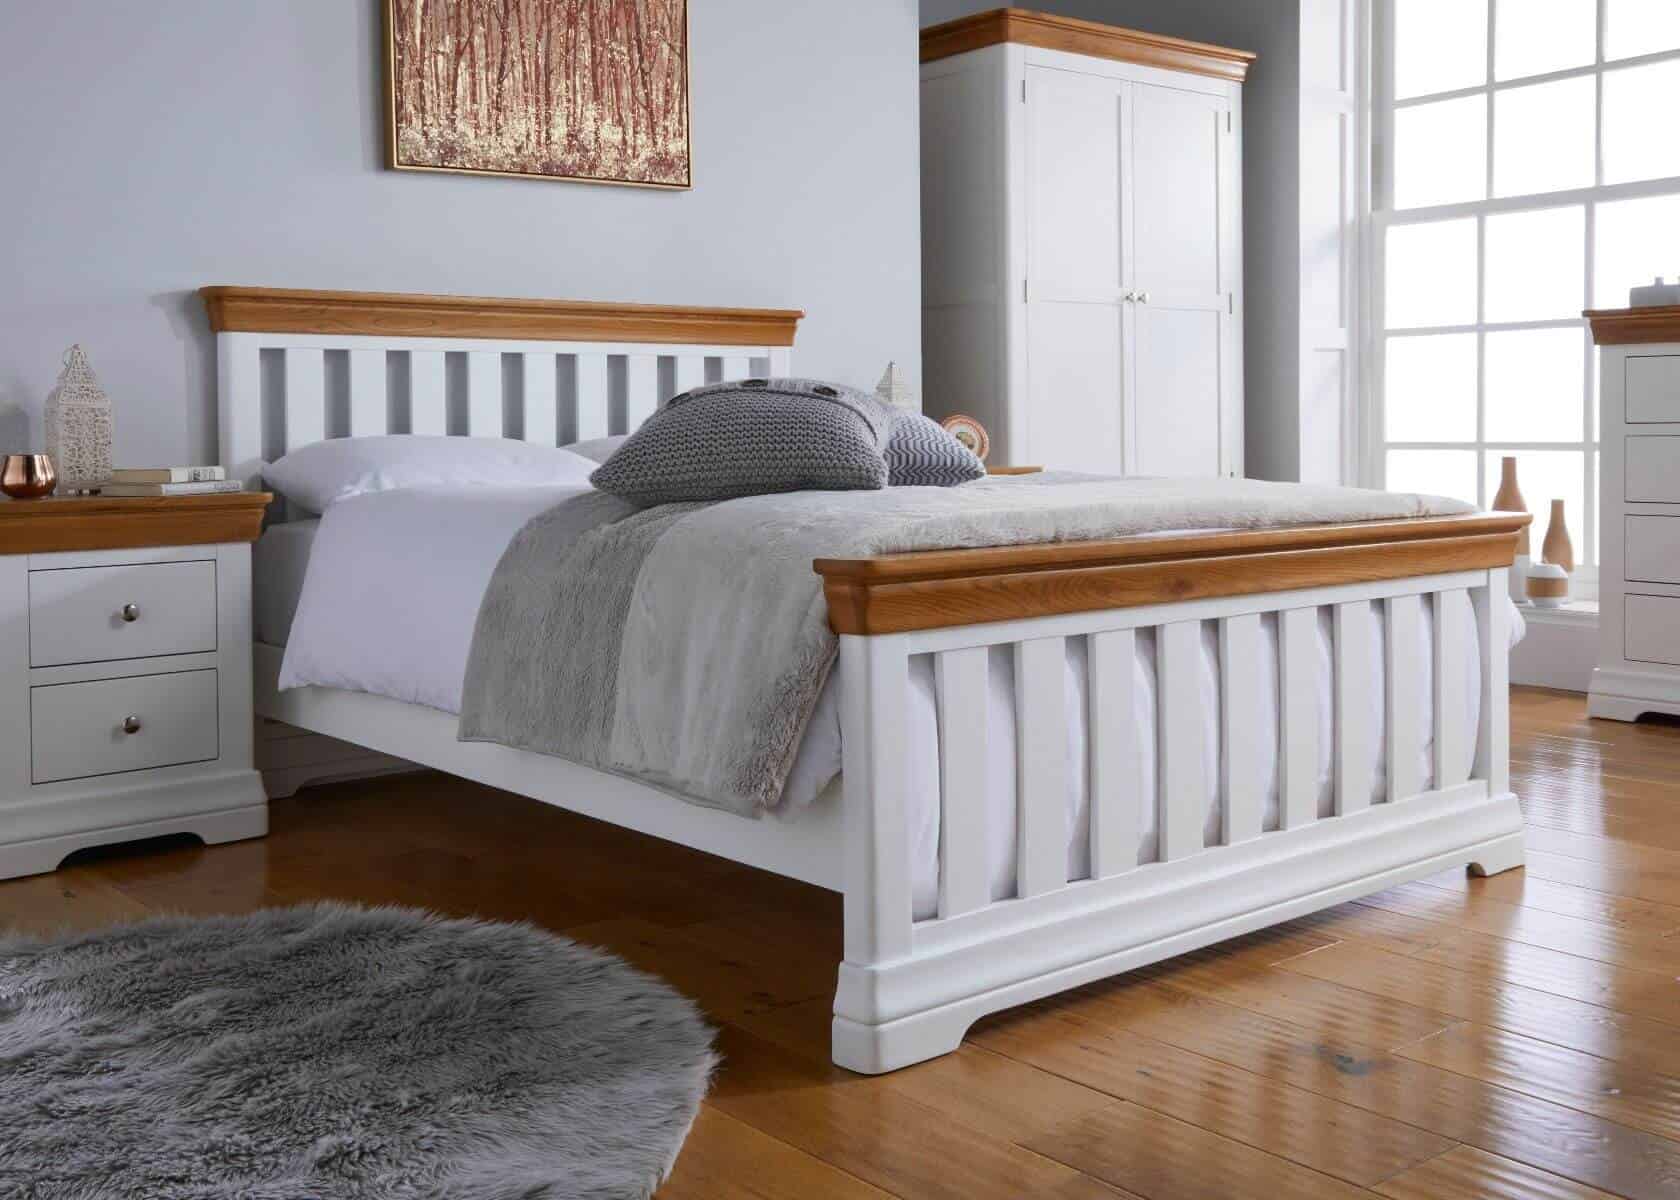 Giường gỗ sồi trắng theo phong cách cổ điển